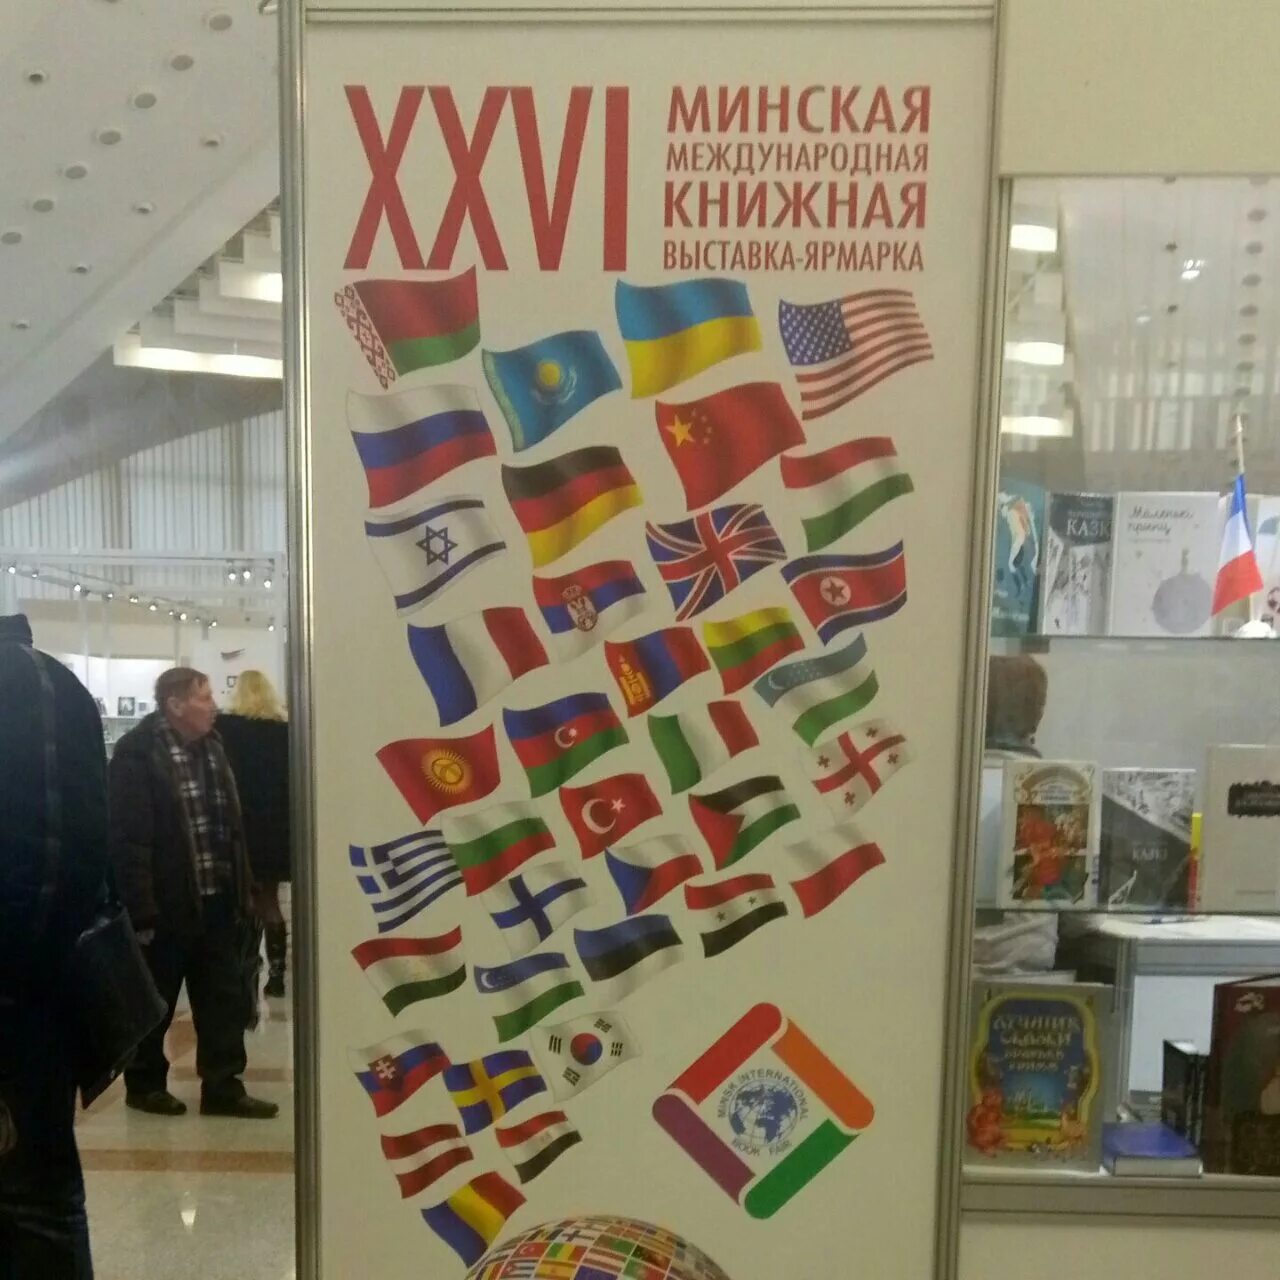 Международная книжная выставка ярмарка